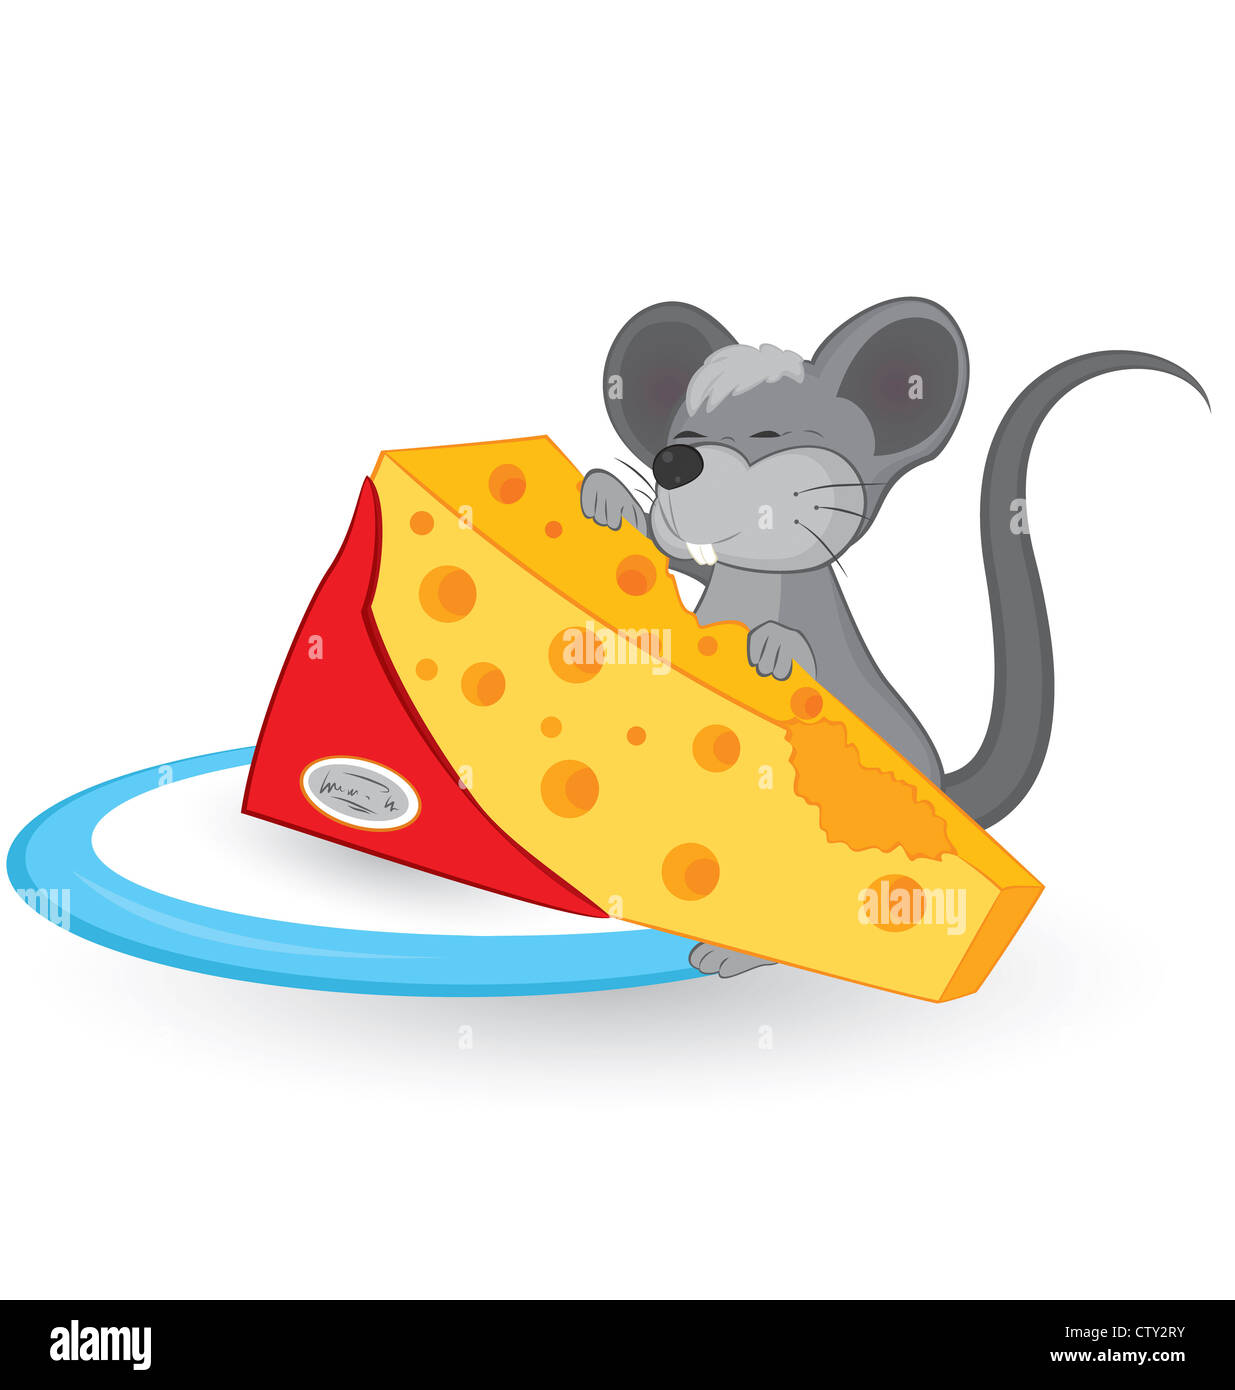 Avec le fromage de la souris Cartoon vector illustration sur fond blanc. Banque D'Images